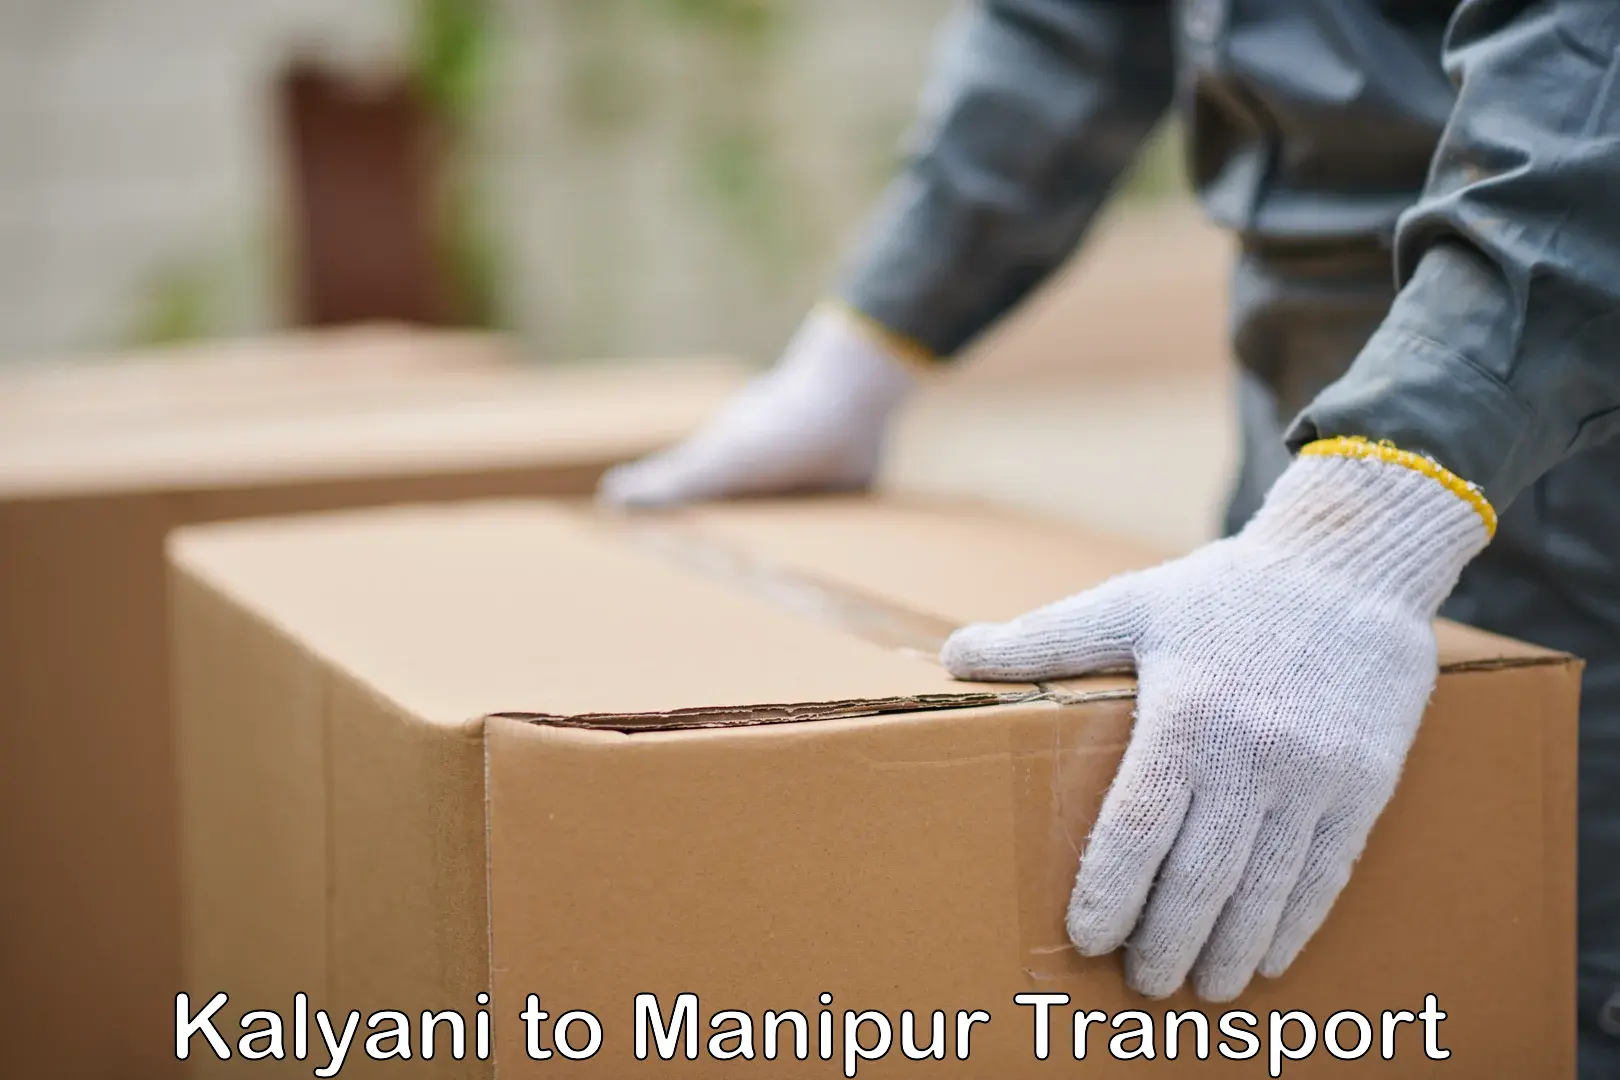 Pick up transport service Kalyani to Manipur